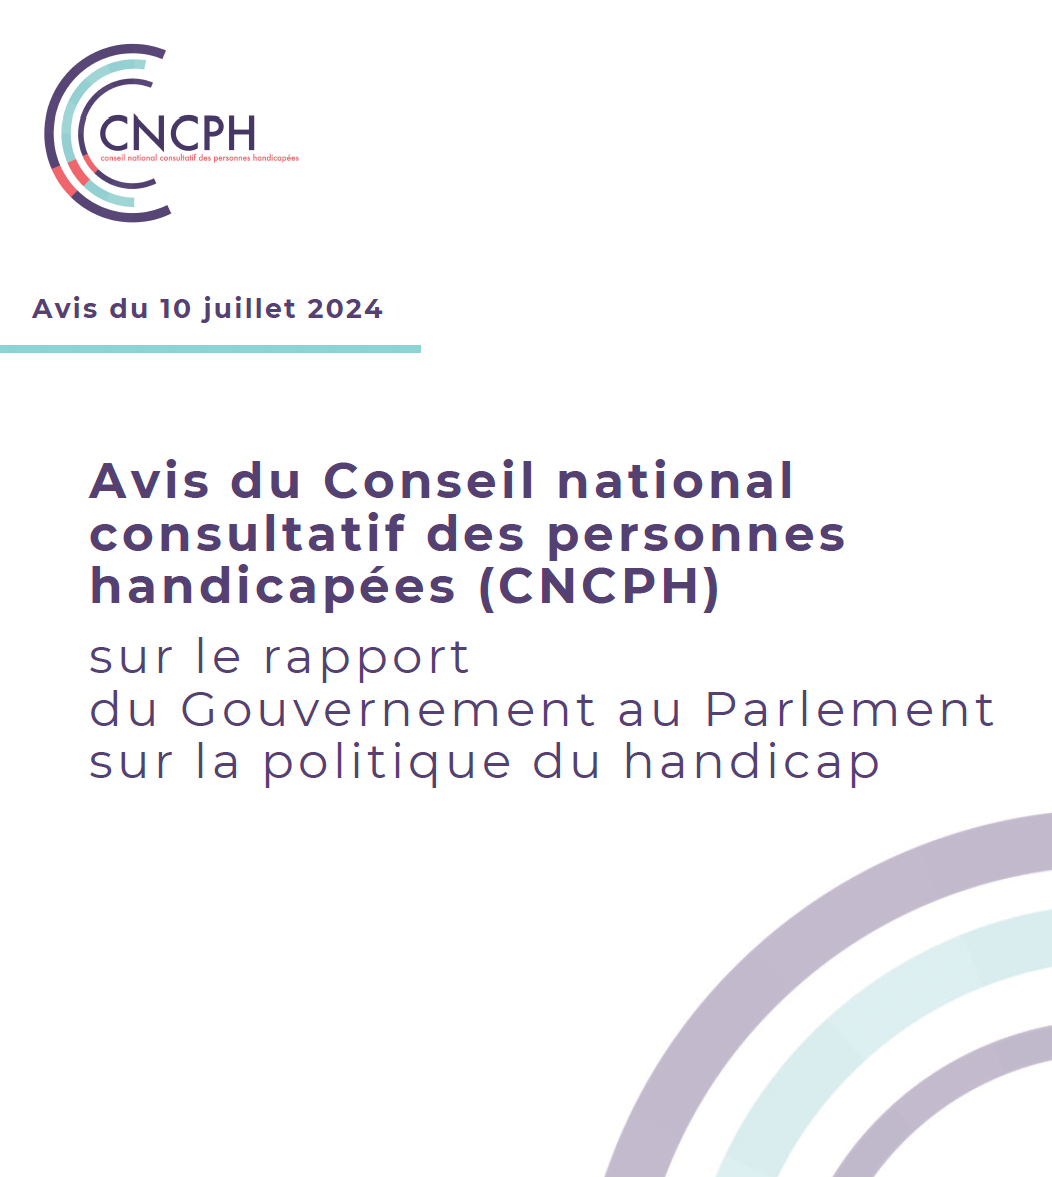 Visuel avec le logo du CNCPH et le titre : avis du 10 juillet 2024, avis du CNCPH sur le rapport du Gouvernement au Parlement sur la politique du handicap